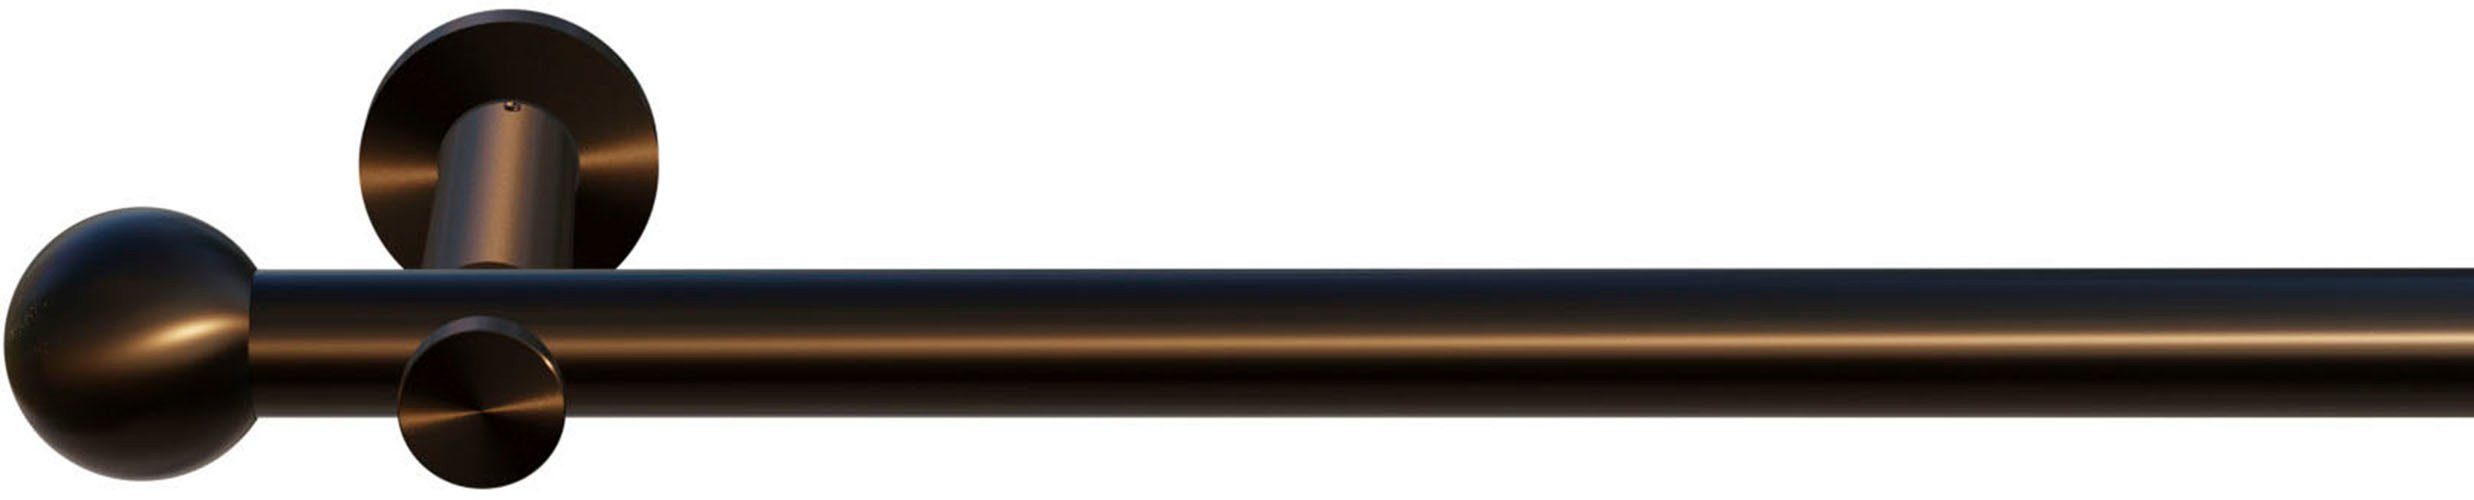 Gardinenstange Colombes, indeko, Ø 20 mm, 1-läufig, Wunschmaßlänge,  verschraubt, Komplett-Set inkl. Montagematerial